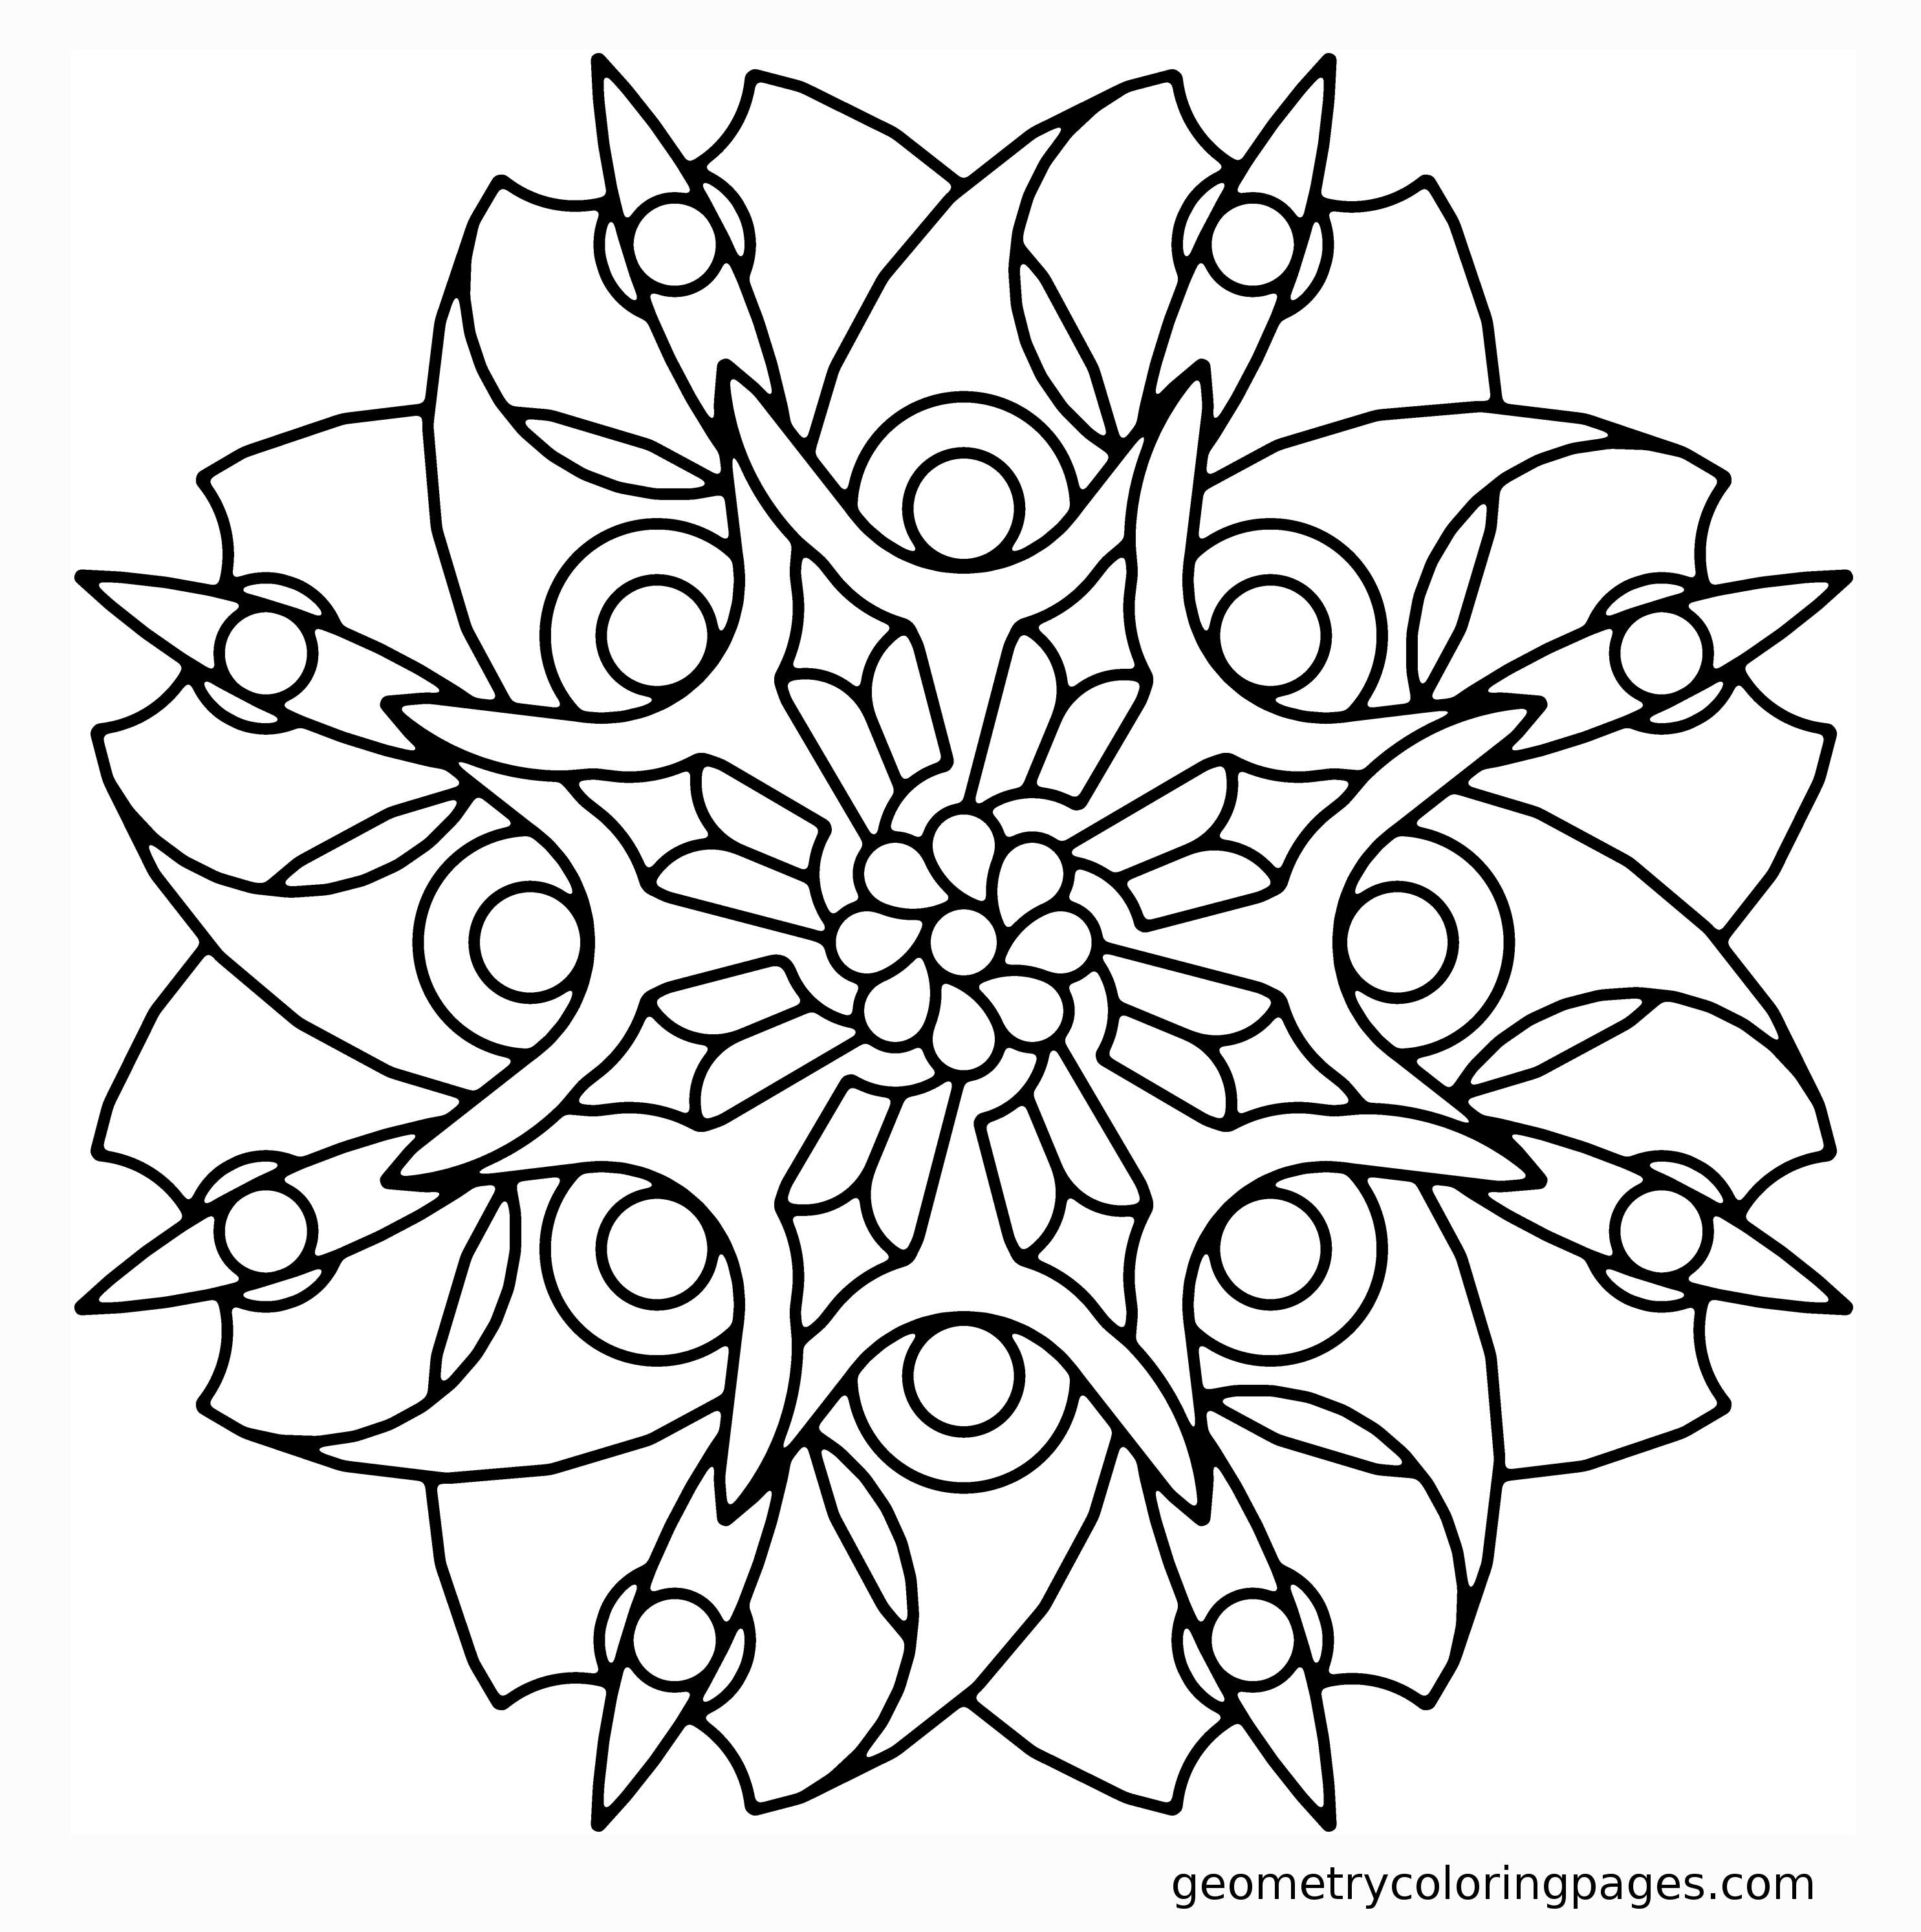 Image #21575 - Coloriage mandalas fleurs gratuit